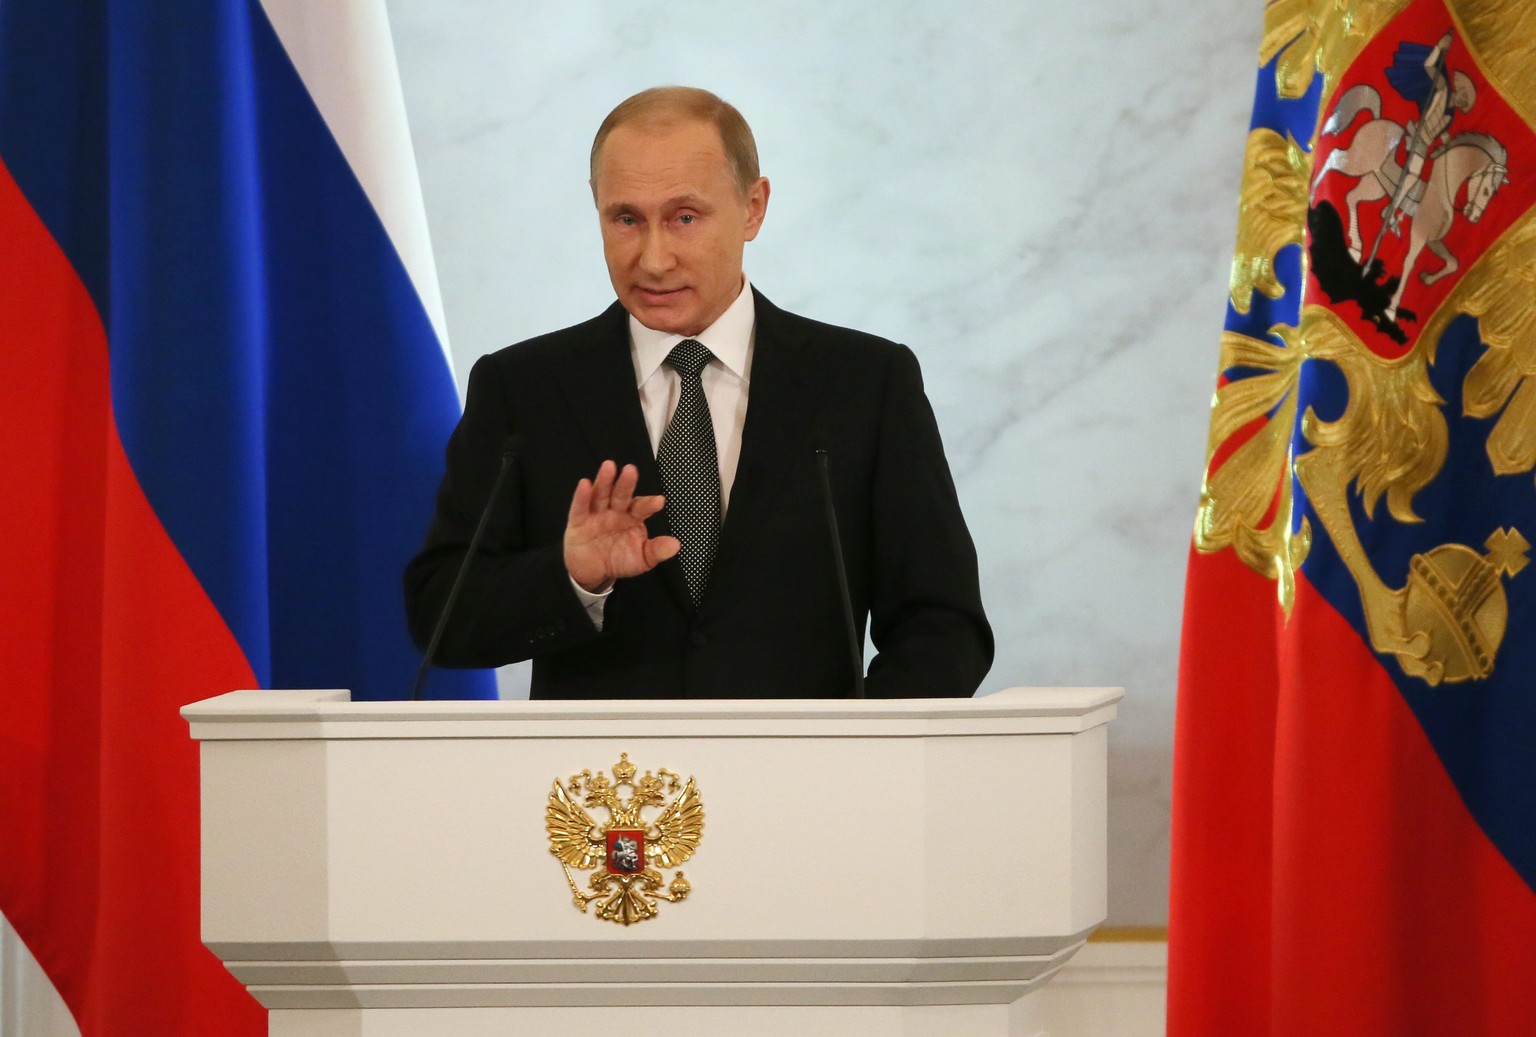 Ohne die Ukraine-Krise «hätte sich der Westen einen anderen Vorwand ausgedacht, um die wachsenden Möglichkeiten Russlands einzudämmen», sagte Putin.